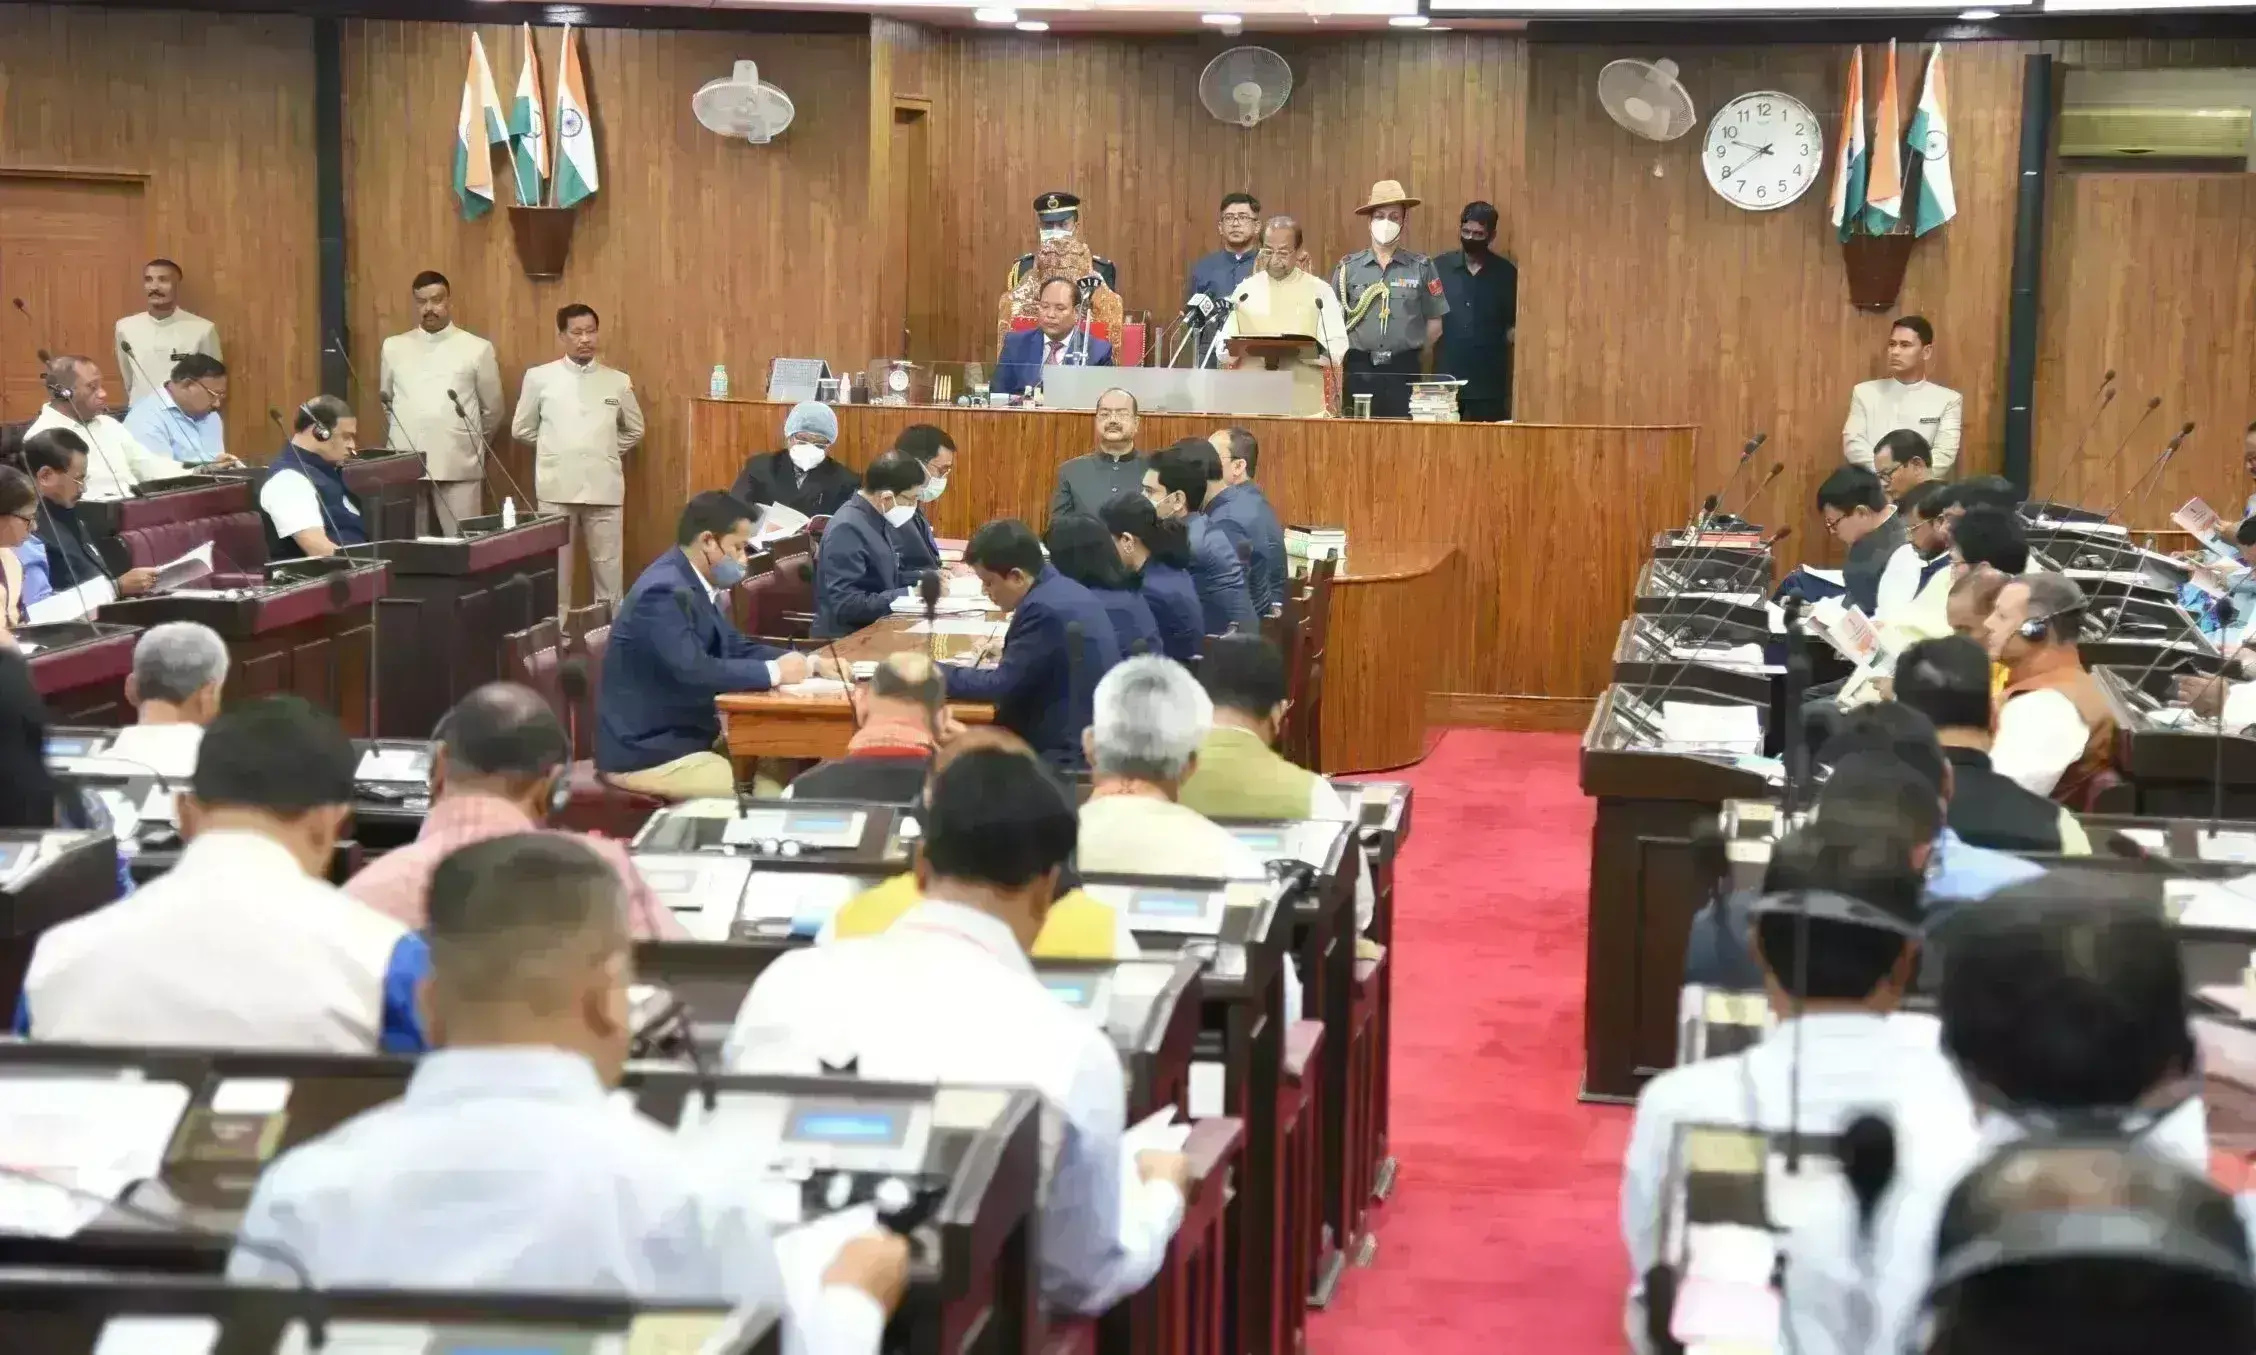 असम विधानसभा का बजट सत्र शुरू, हंगामा कर रहे विधायक को मार्शल ने बाहर निकाला